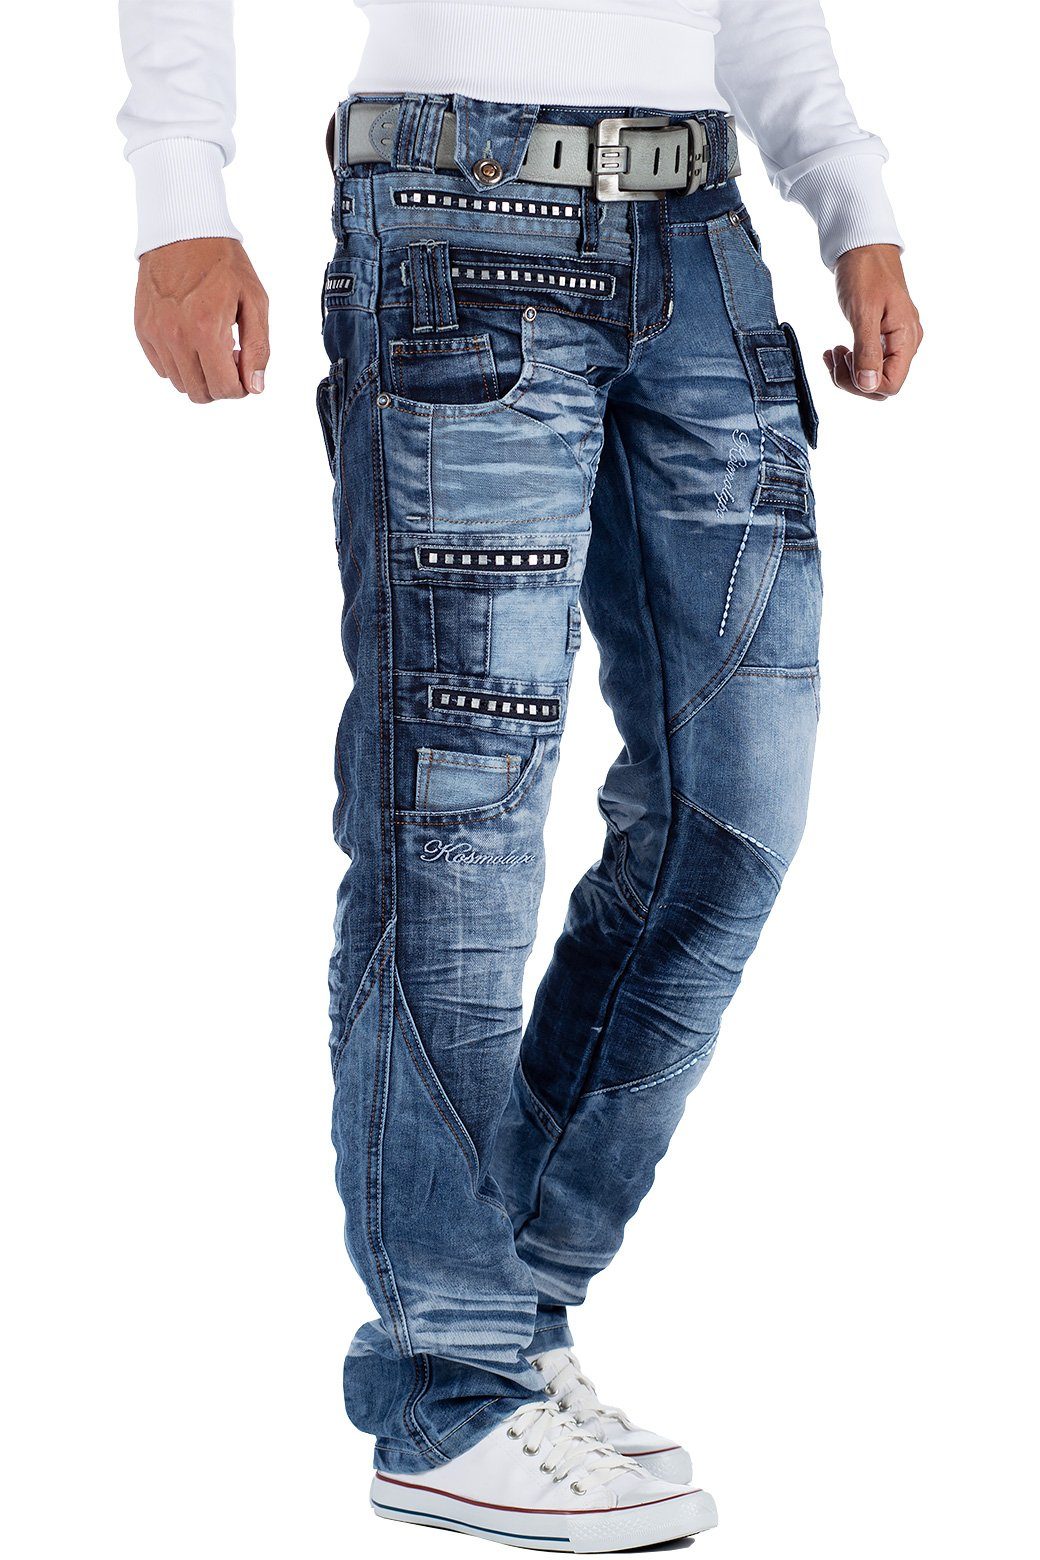 Hose Verzierungen Herren Auffällige mit und blau Kosmo 5-Pocket-Jeans Lupo BA-KM001 Nieten